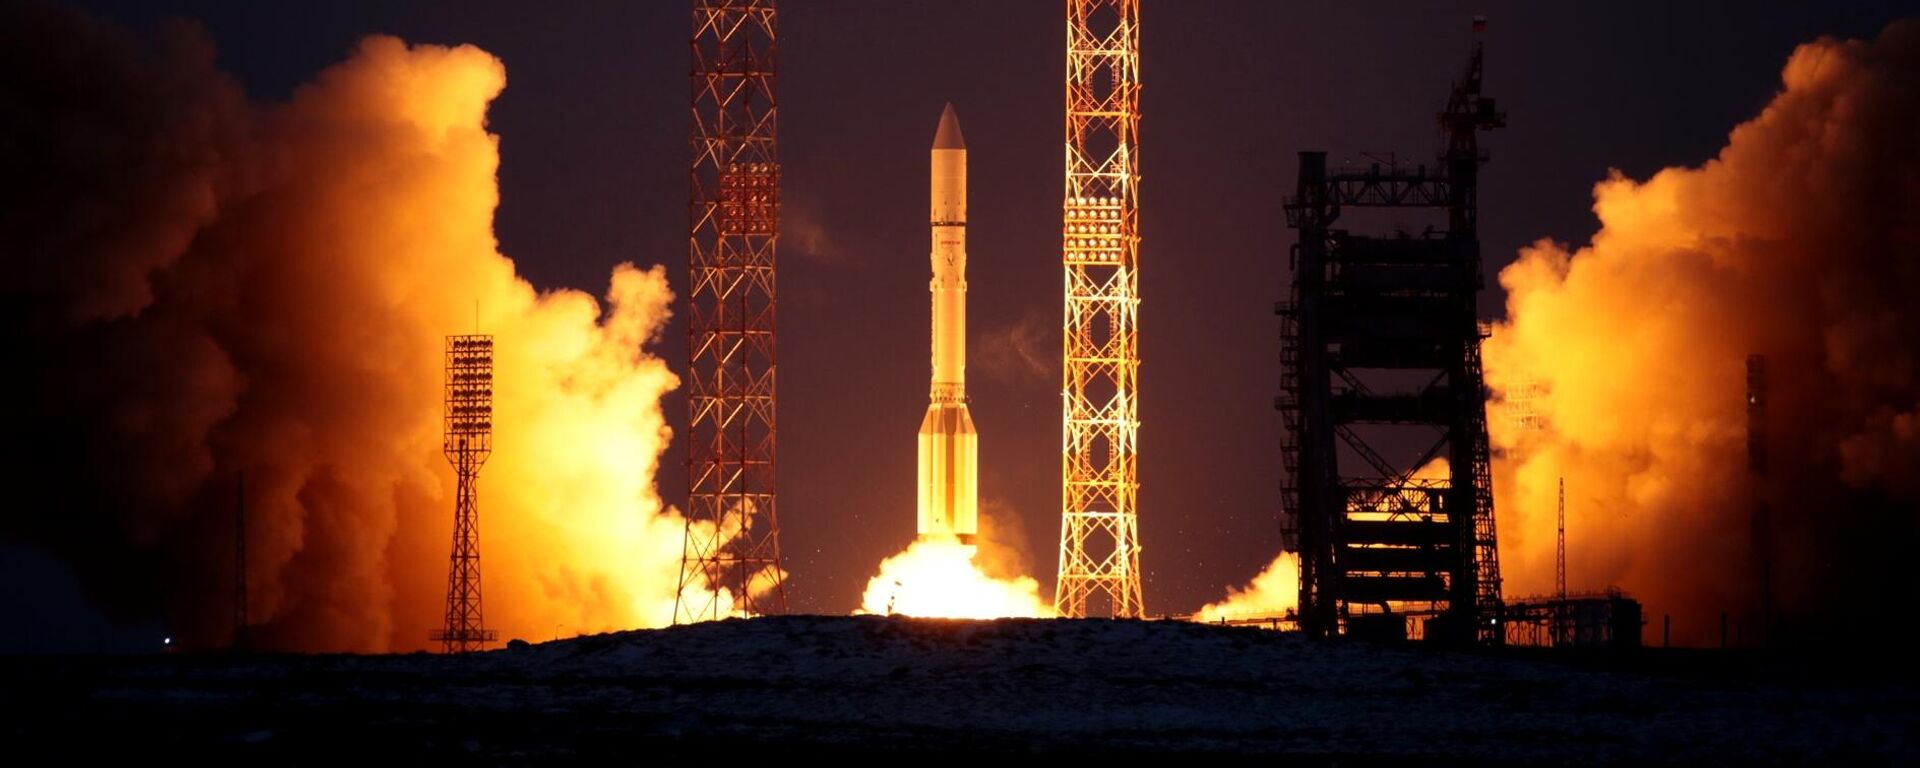 Lançamento do foguete transportador Proton-M com o estágio superior Breeze-M e as espaçonaves Express-AMU3 e Express-AMU7 do complexo de lançamento do Cosmódromo de Baikonur, no Cazaquistão. - Sputnik Brasil, 1920, 12.04.2022